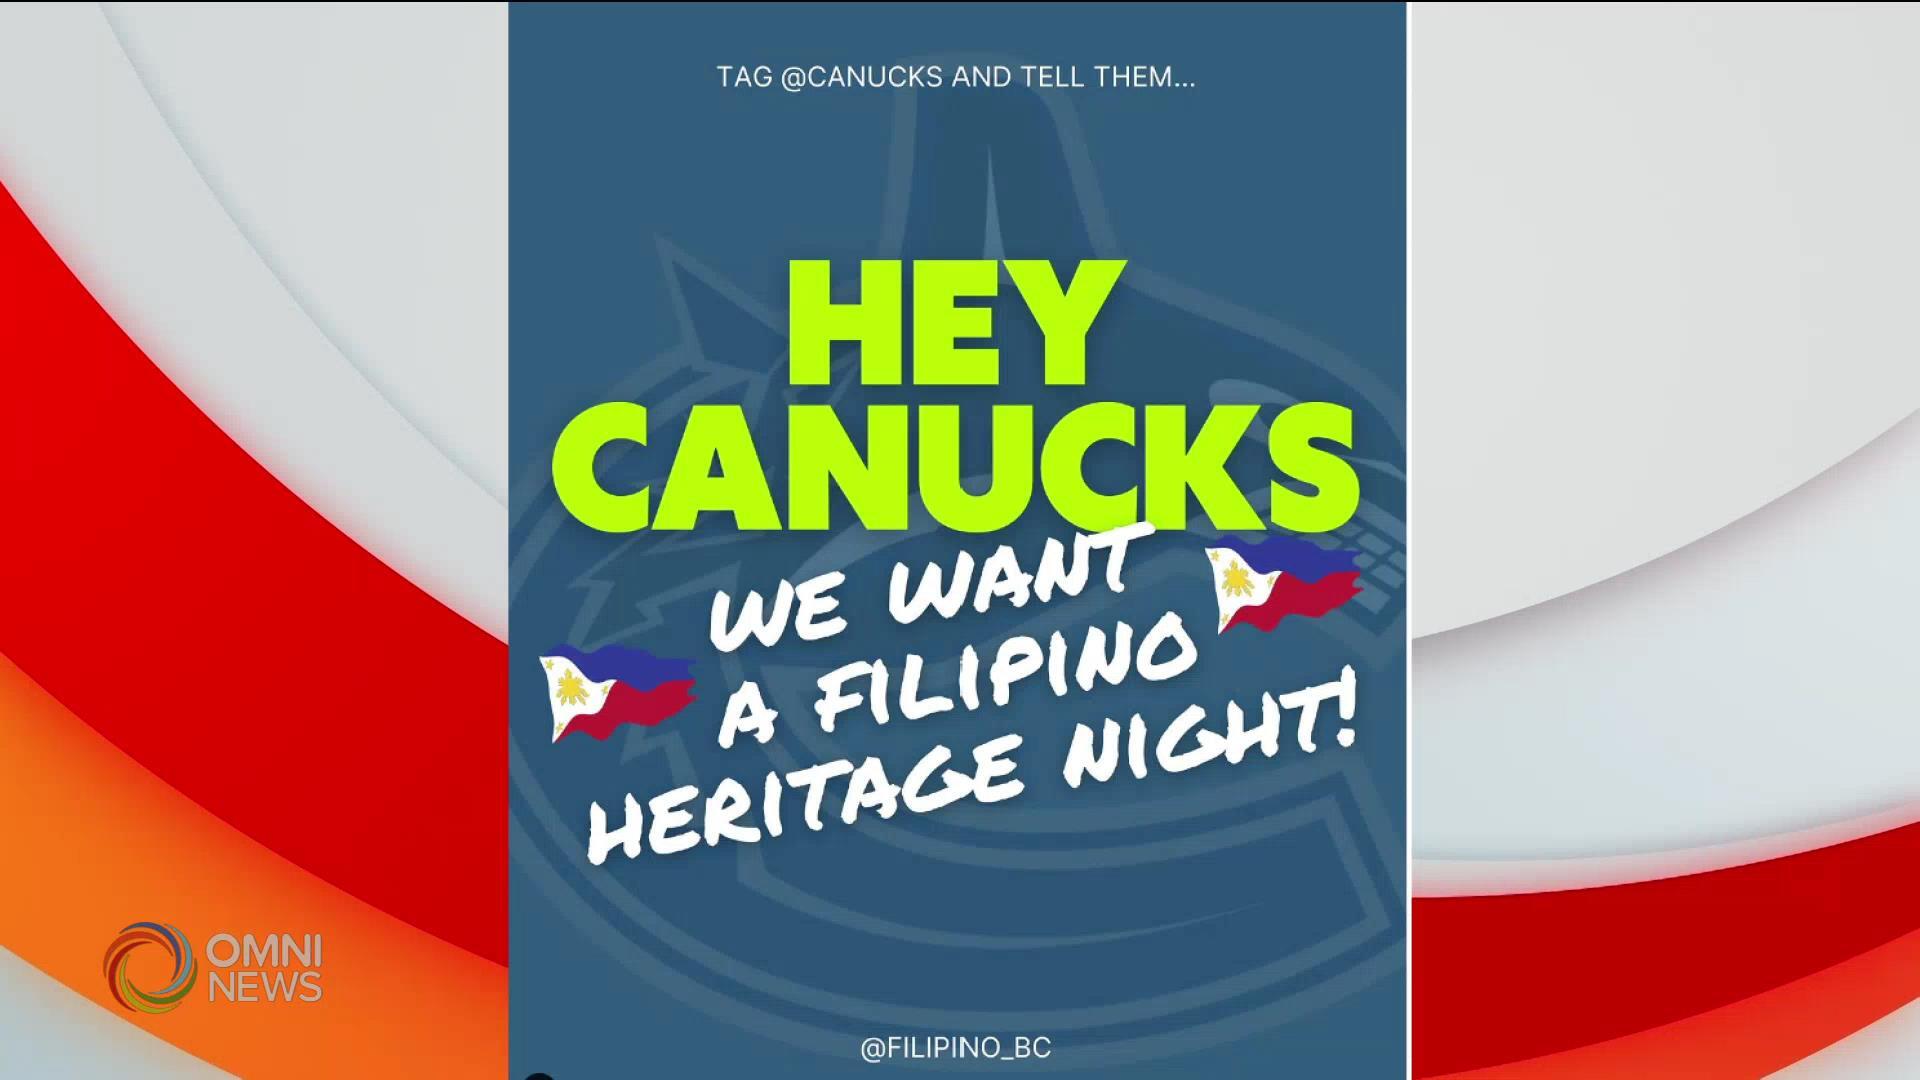 Panawagan na magkaroon ng Filipino Heritage Night ang Vancouver Canucks